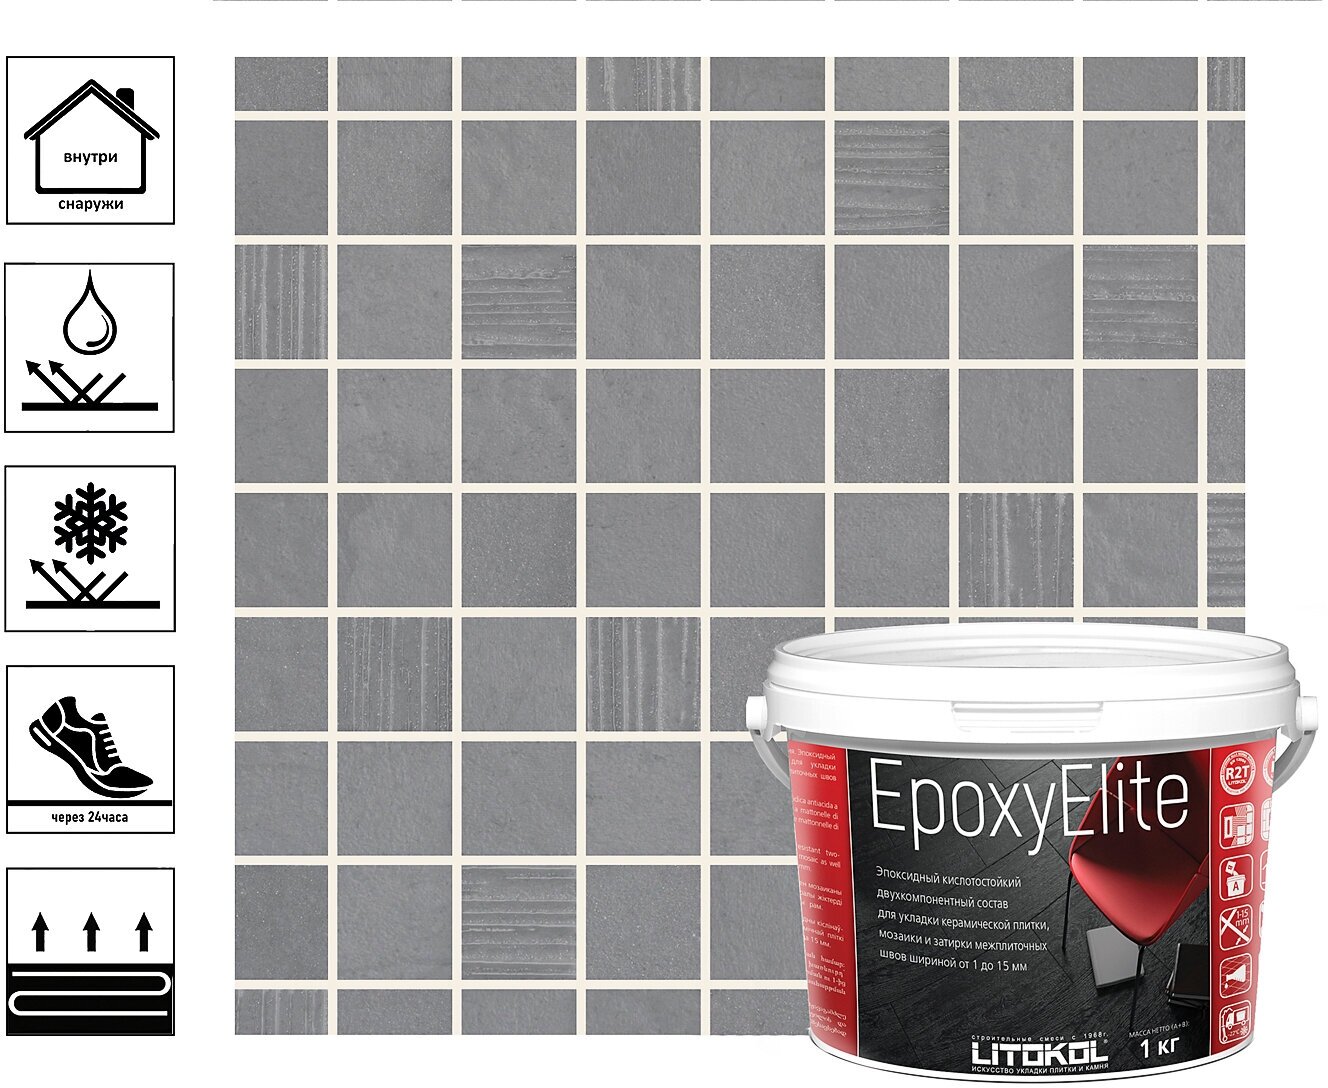 Затирка эпоксидная EpoxyElite для укладки и затирки мозаики и керамической плитки 1 кг, молочный